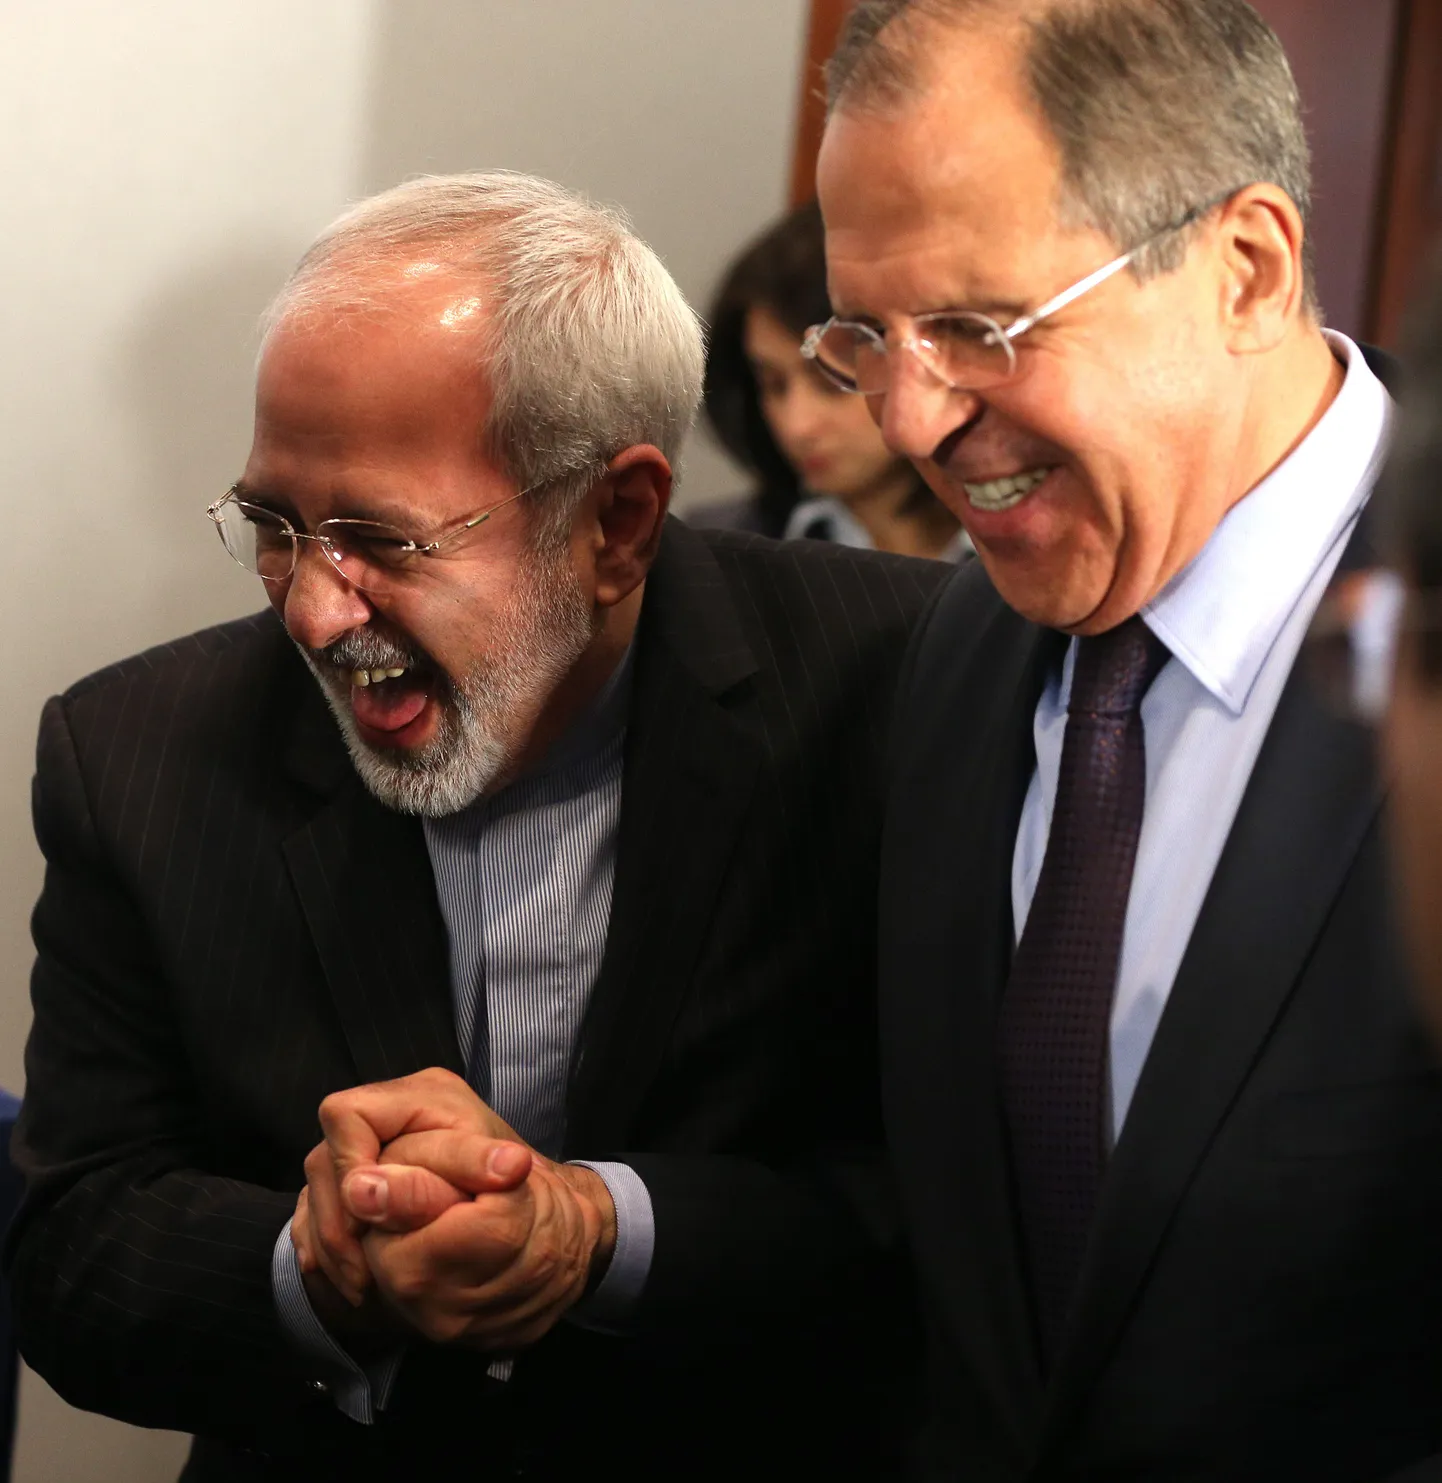 Iraani välisminister Mohammad Javad Zarif (vasakul) ja Venemaa välisminister Sergei Lavrov.